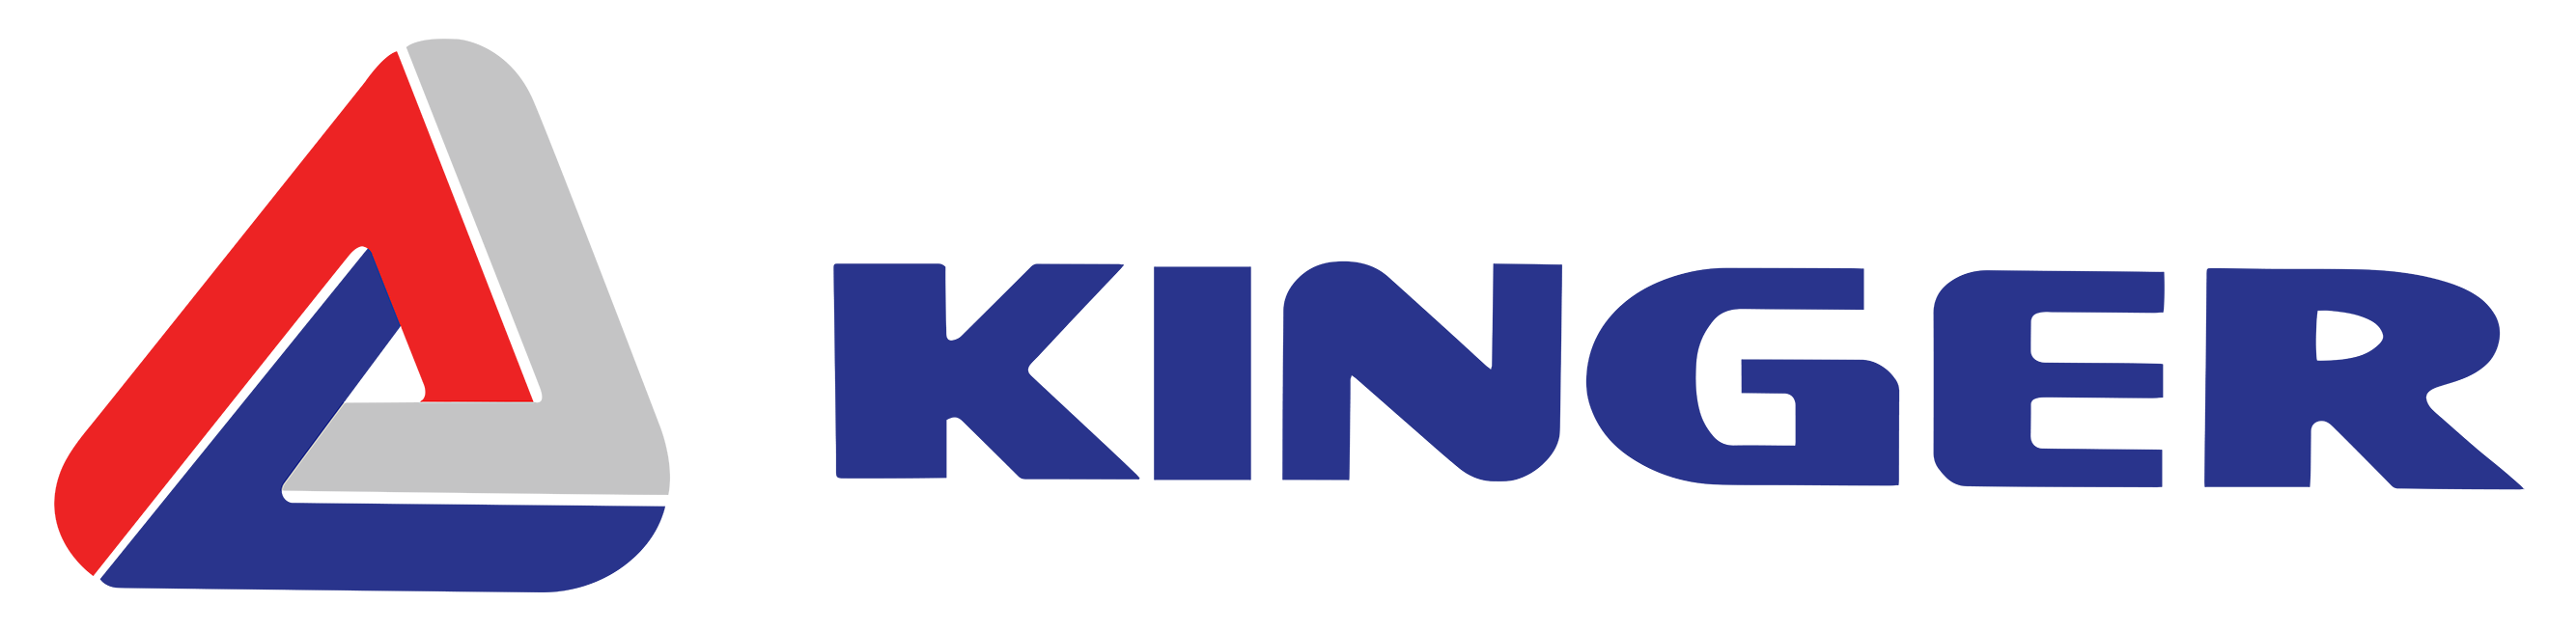 Kinger Industry Inc